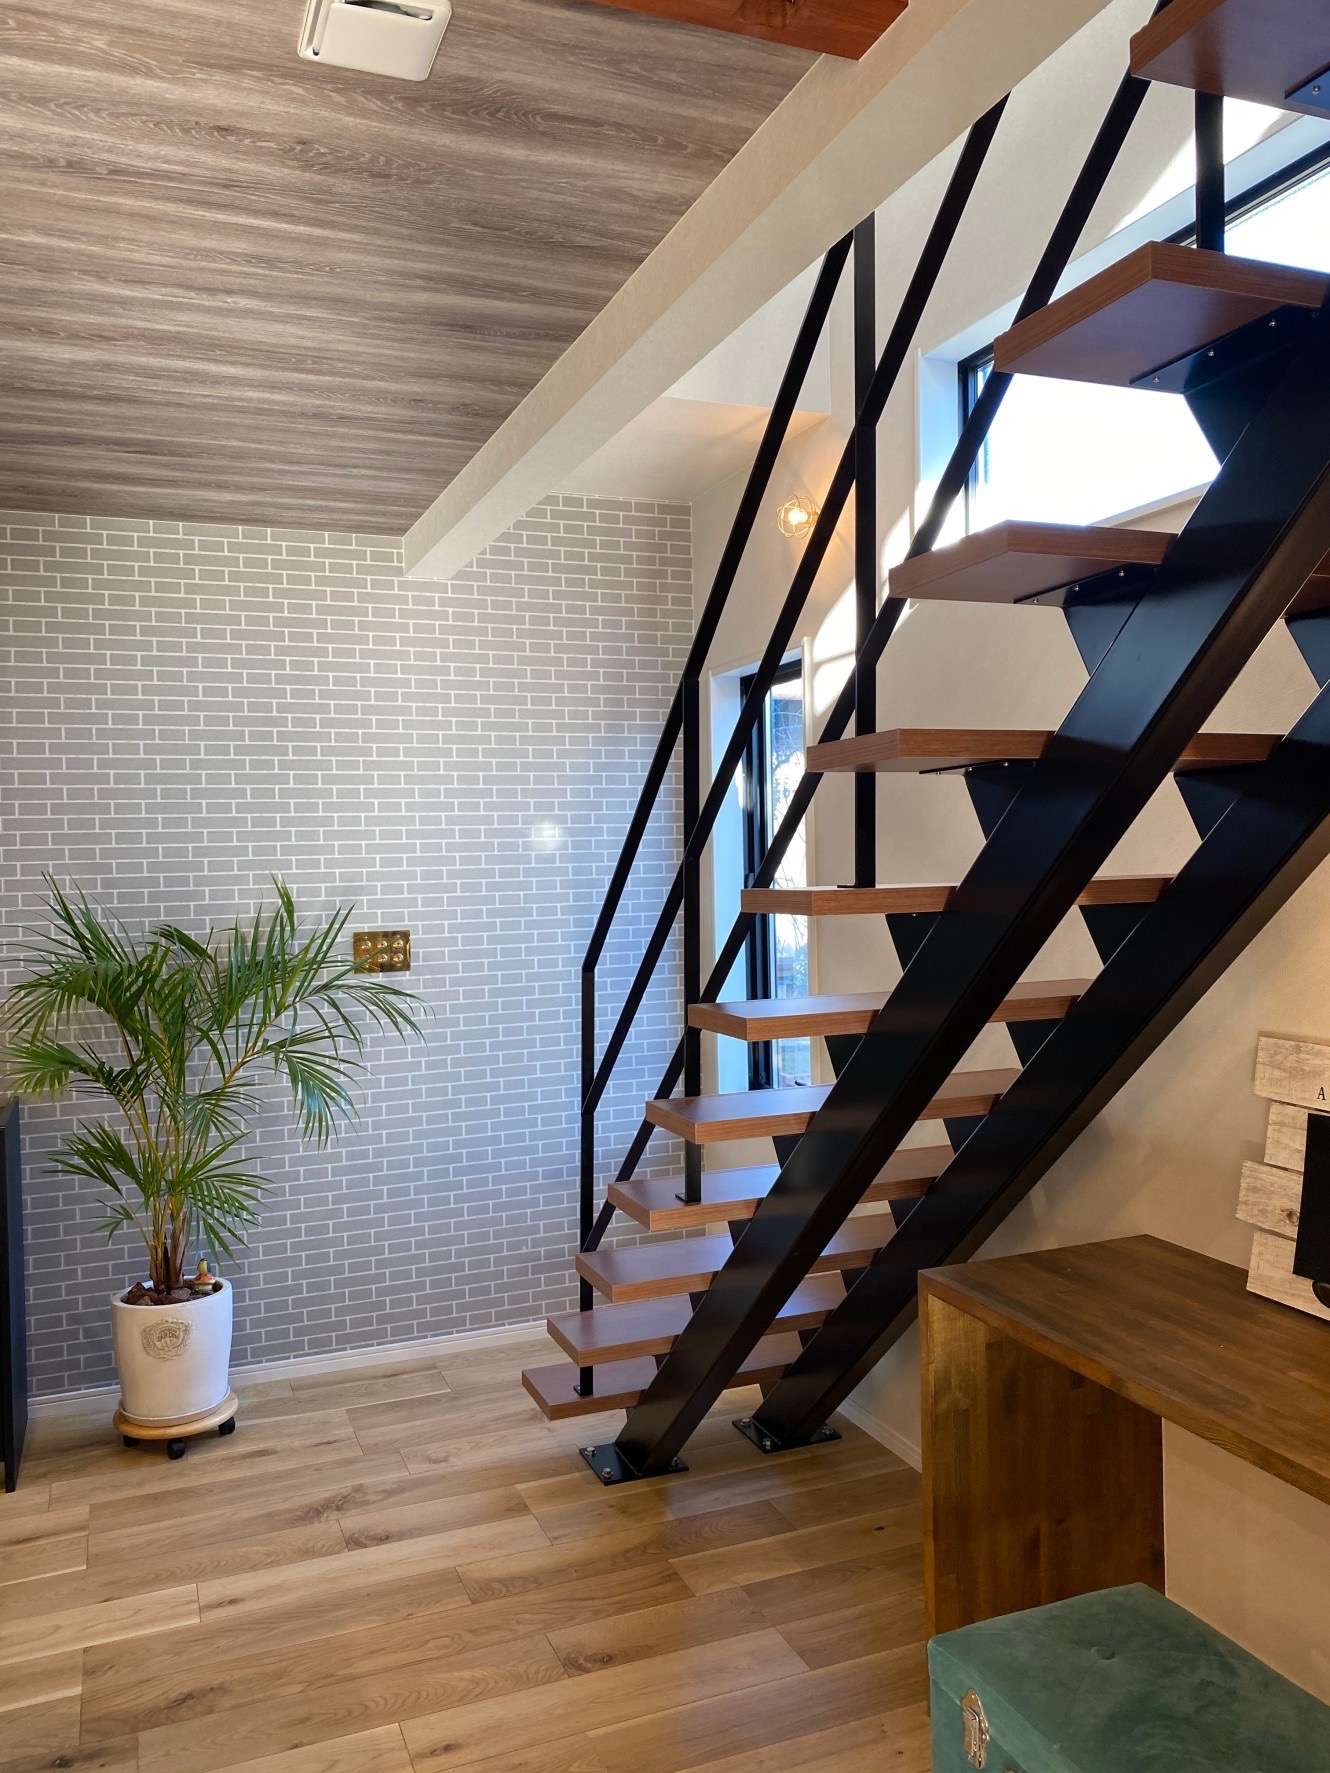 【開放感を感じられるアイアン階段をご紹介】| mikiデザインハウスで新築・リノベーション